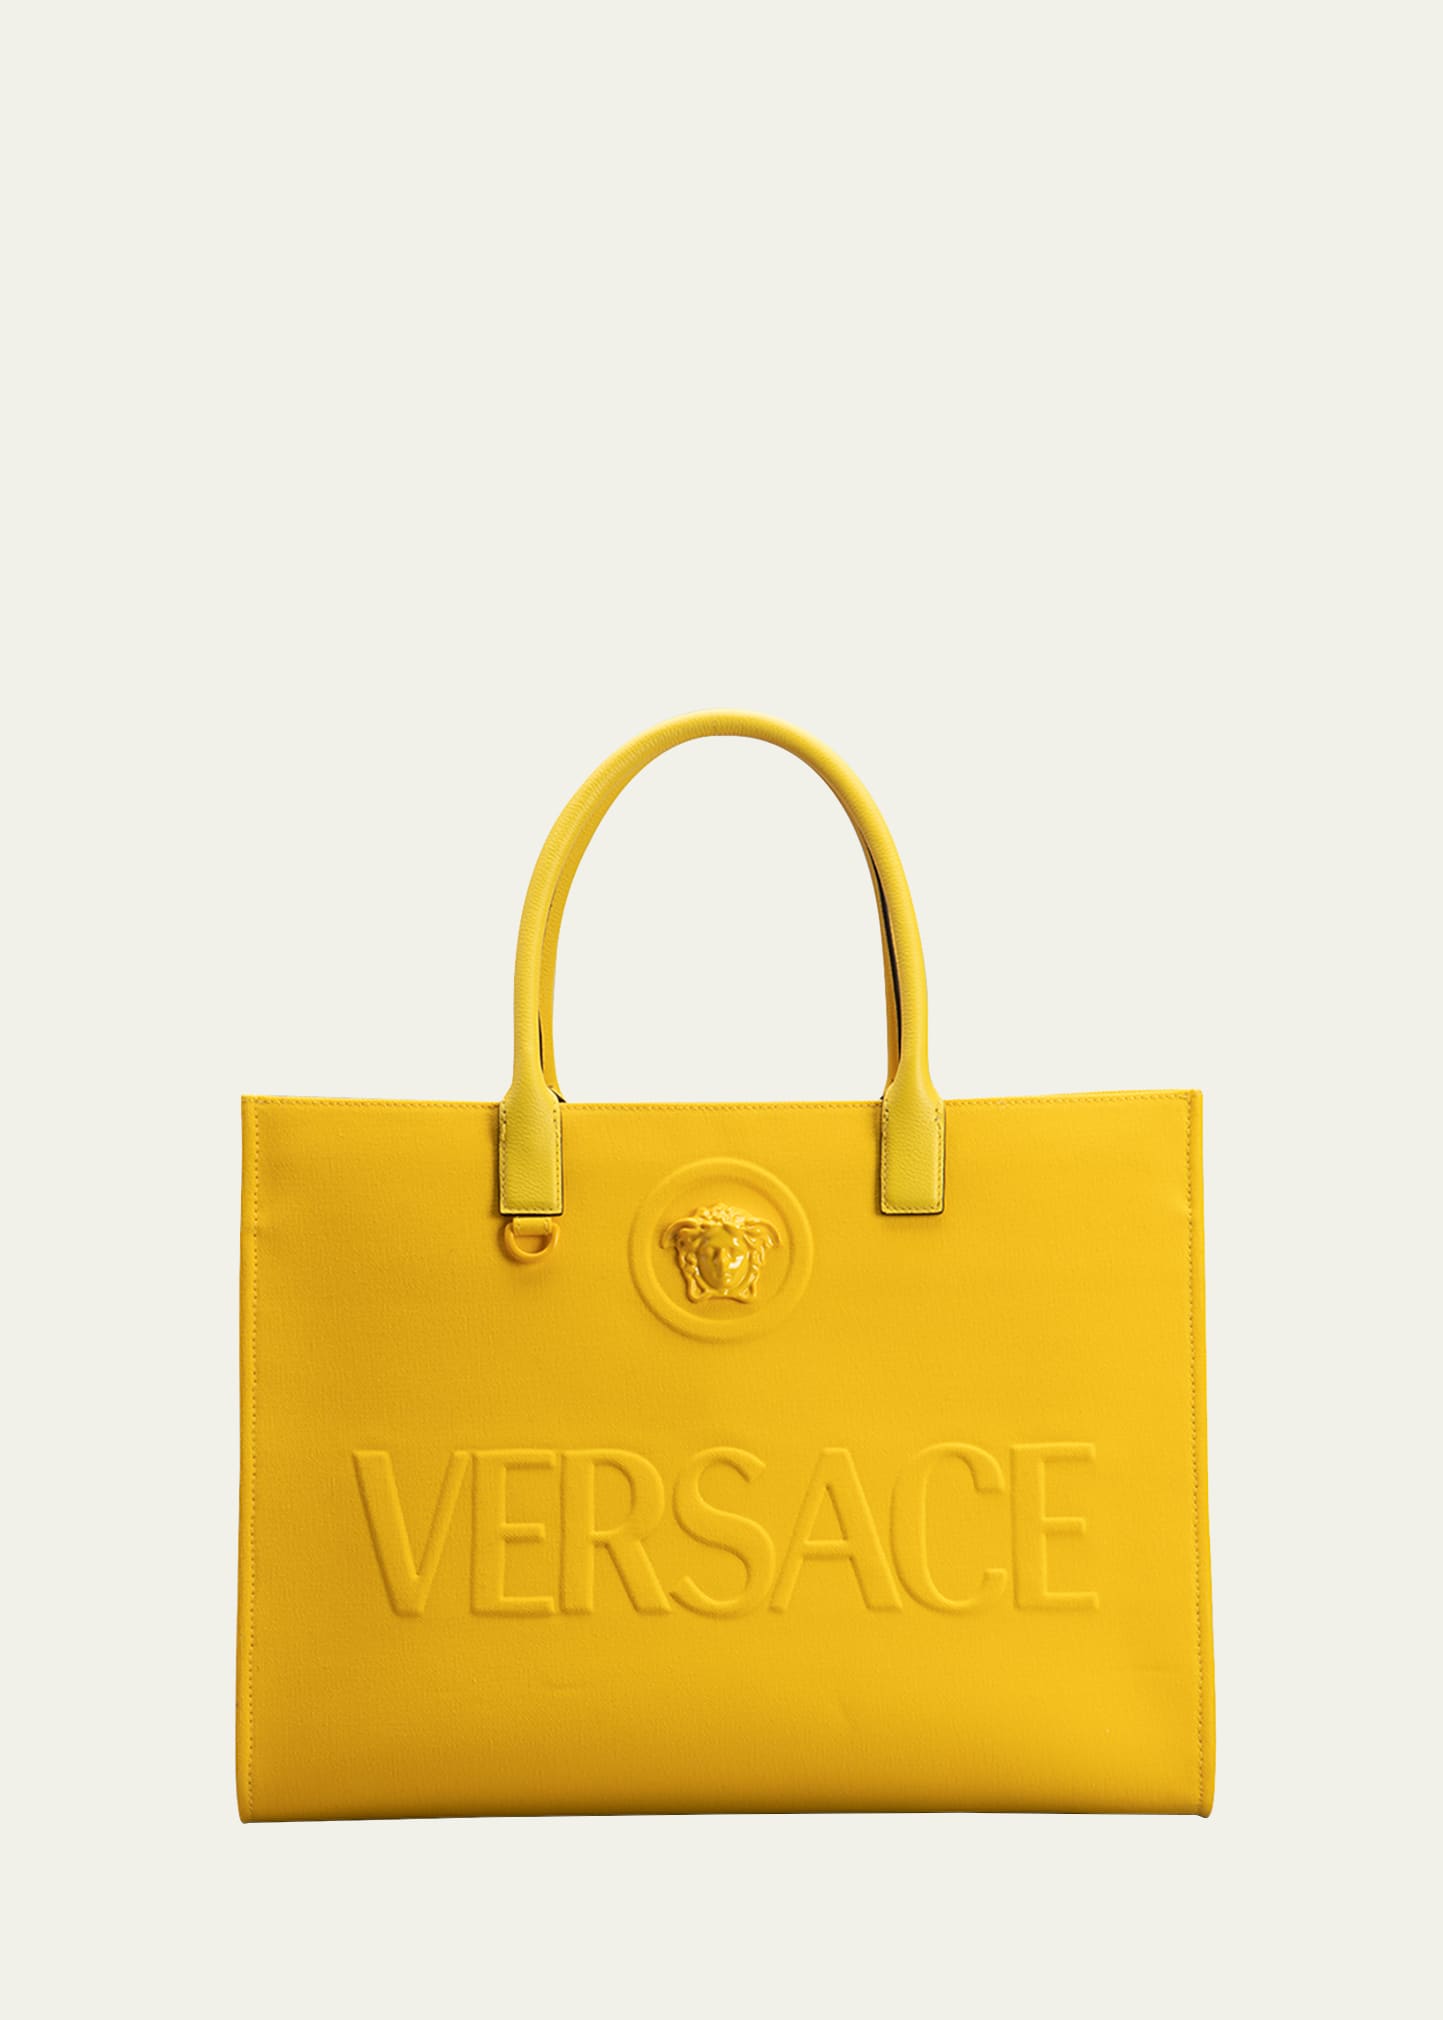 Totes bags Versace - Medusa Amplified print bag in yellow -  DBFI004D3NSMV5B00V